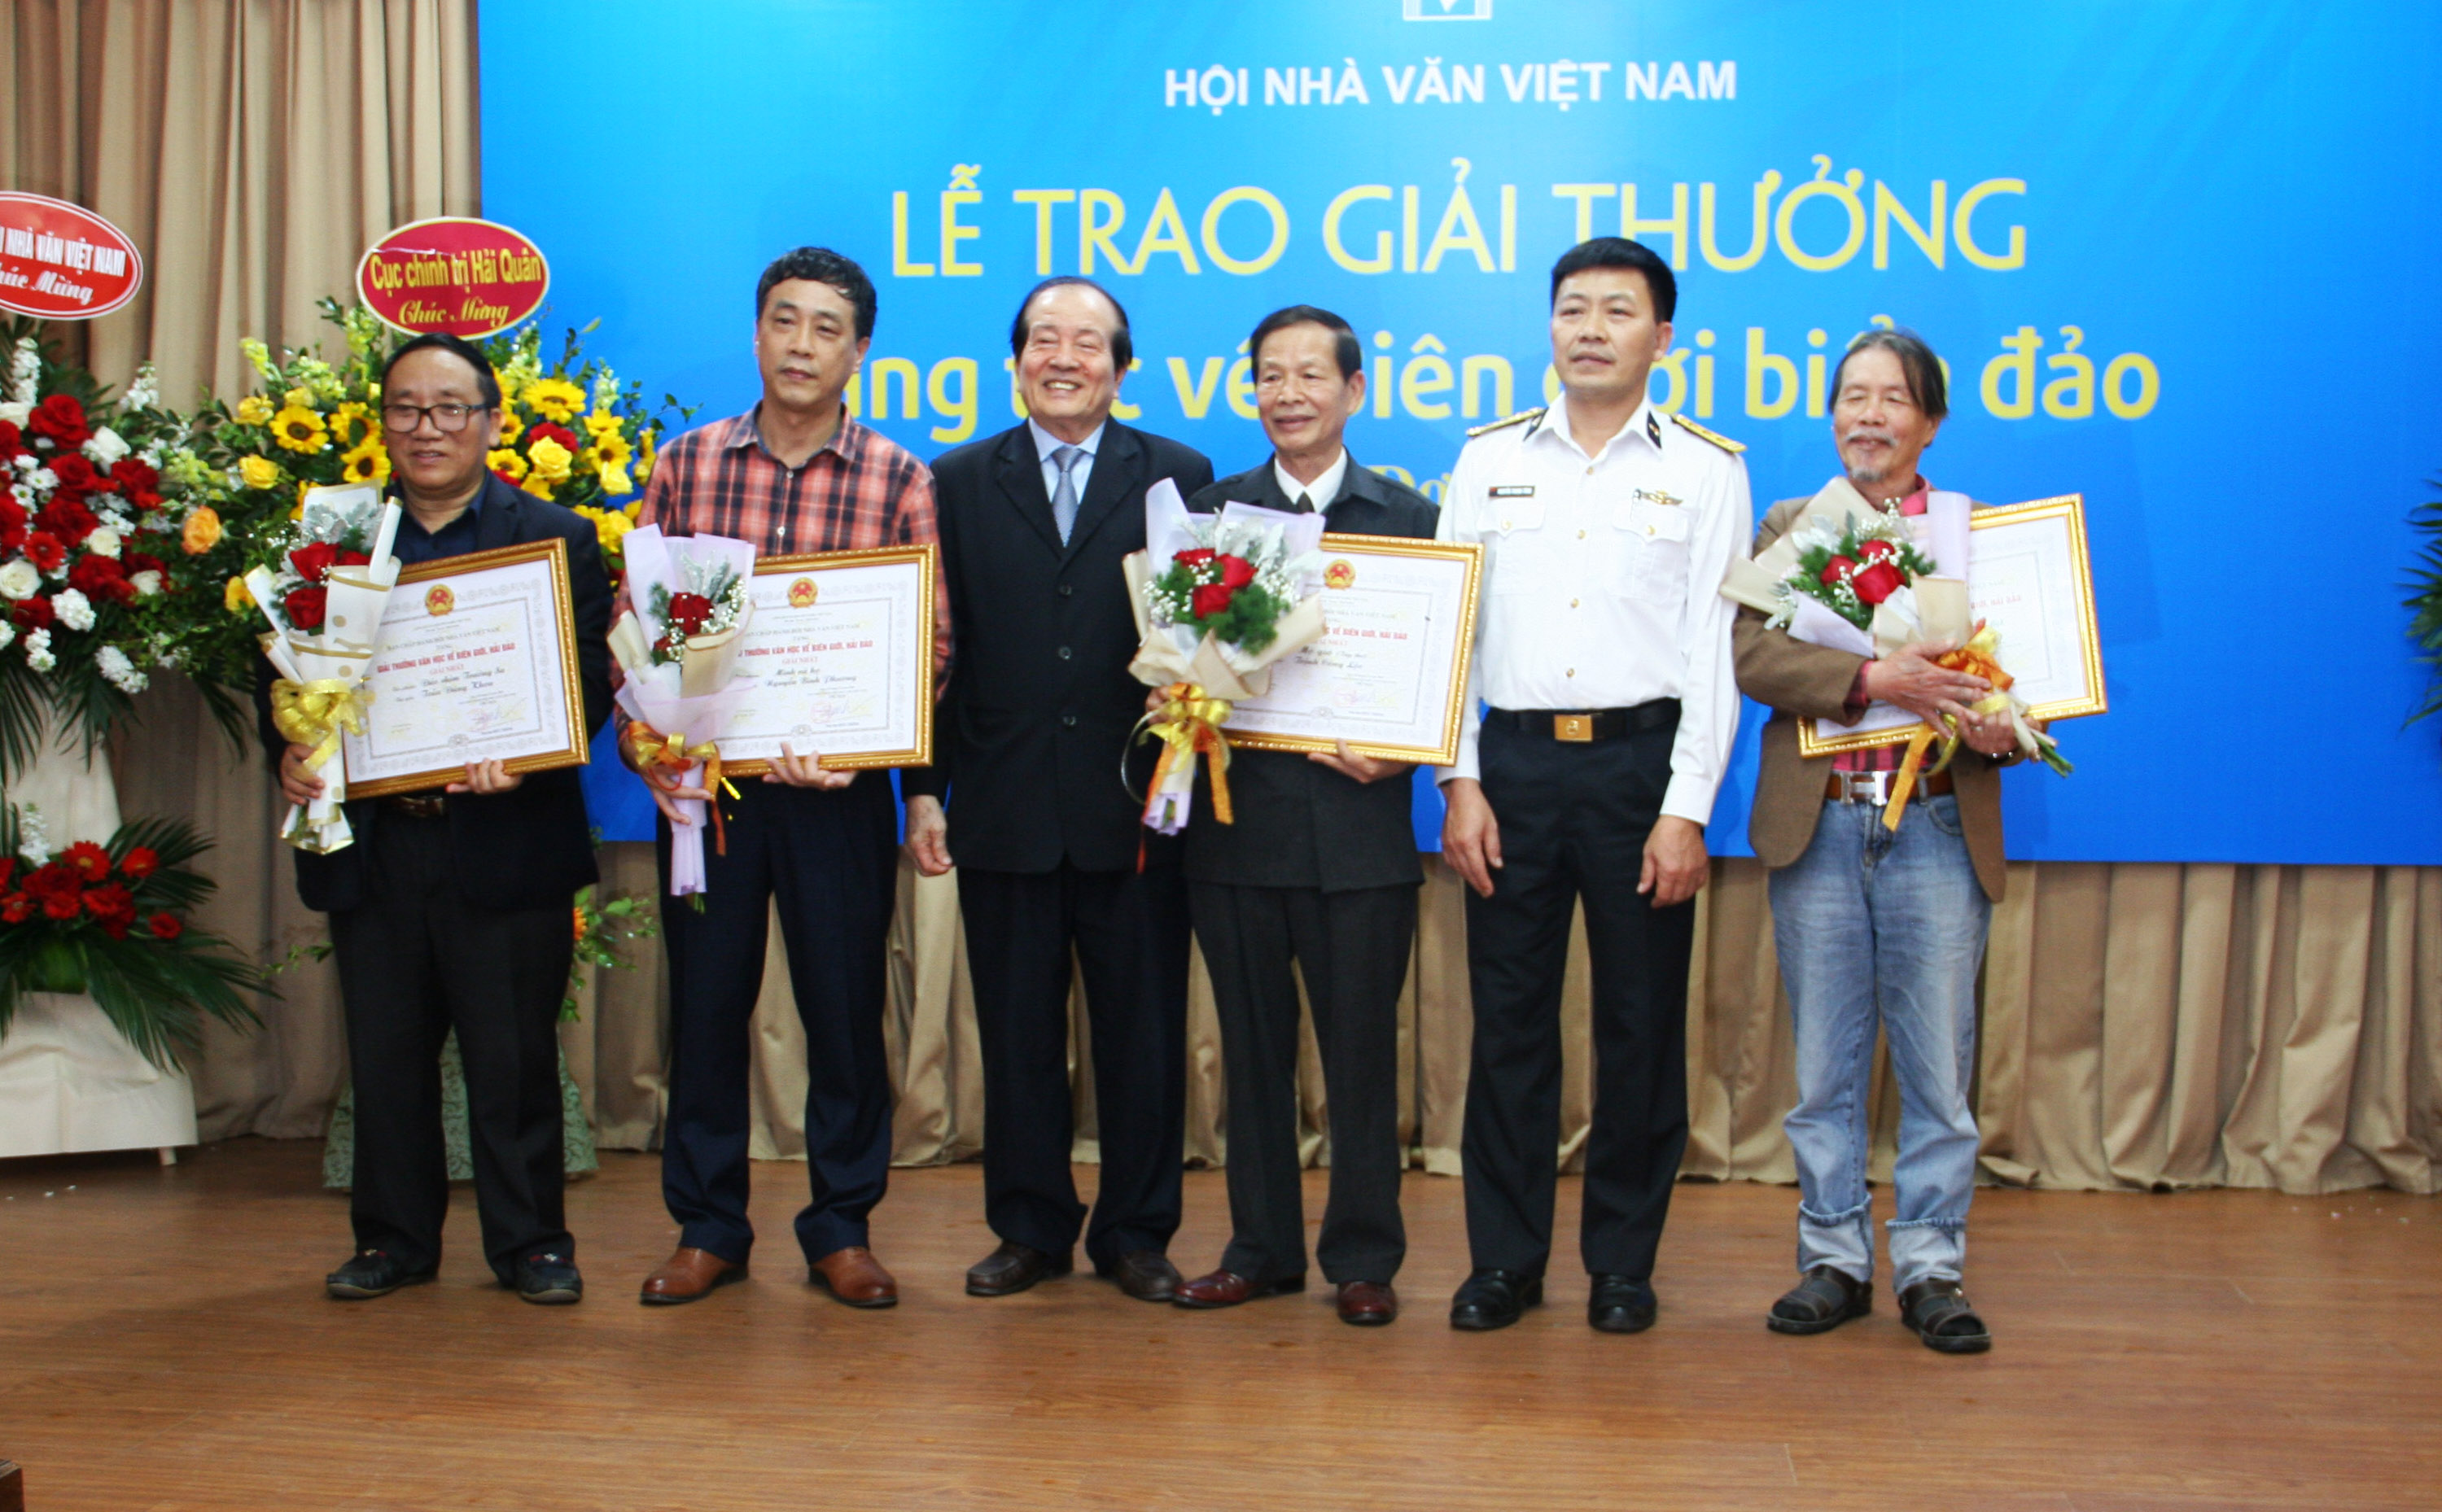 Nhà thơ Trịnh Công Lộc (thứ ba, phải sang) và các nhà văn, nhà thơ nhận giải nhất của cuộc thi.